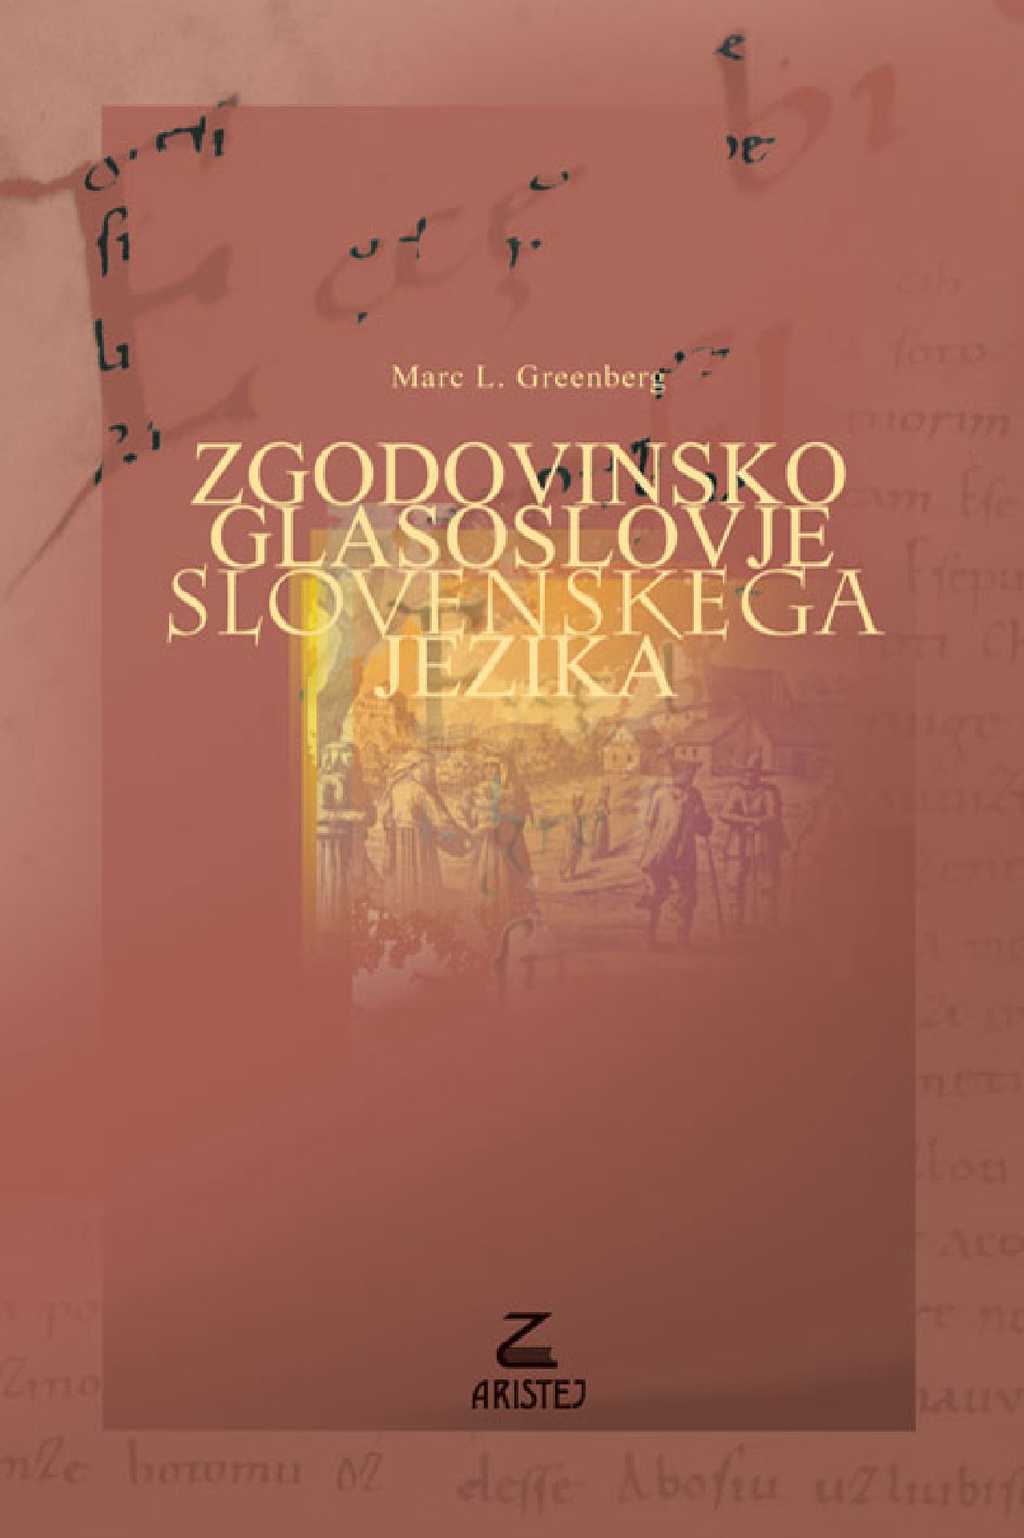 Zgodovinsko glasoslovje slovenskega jezika